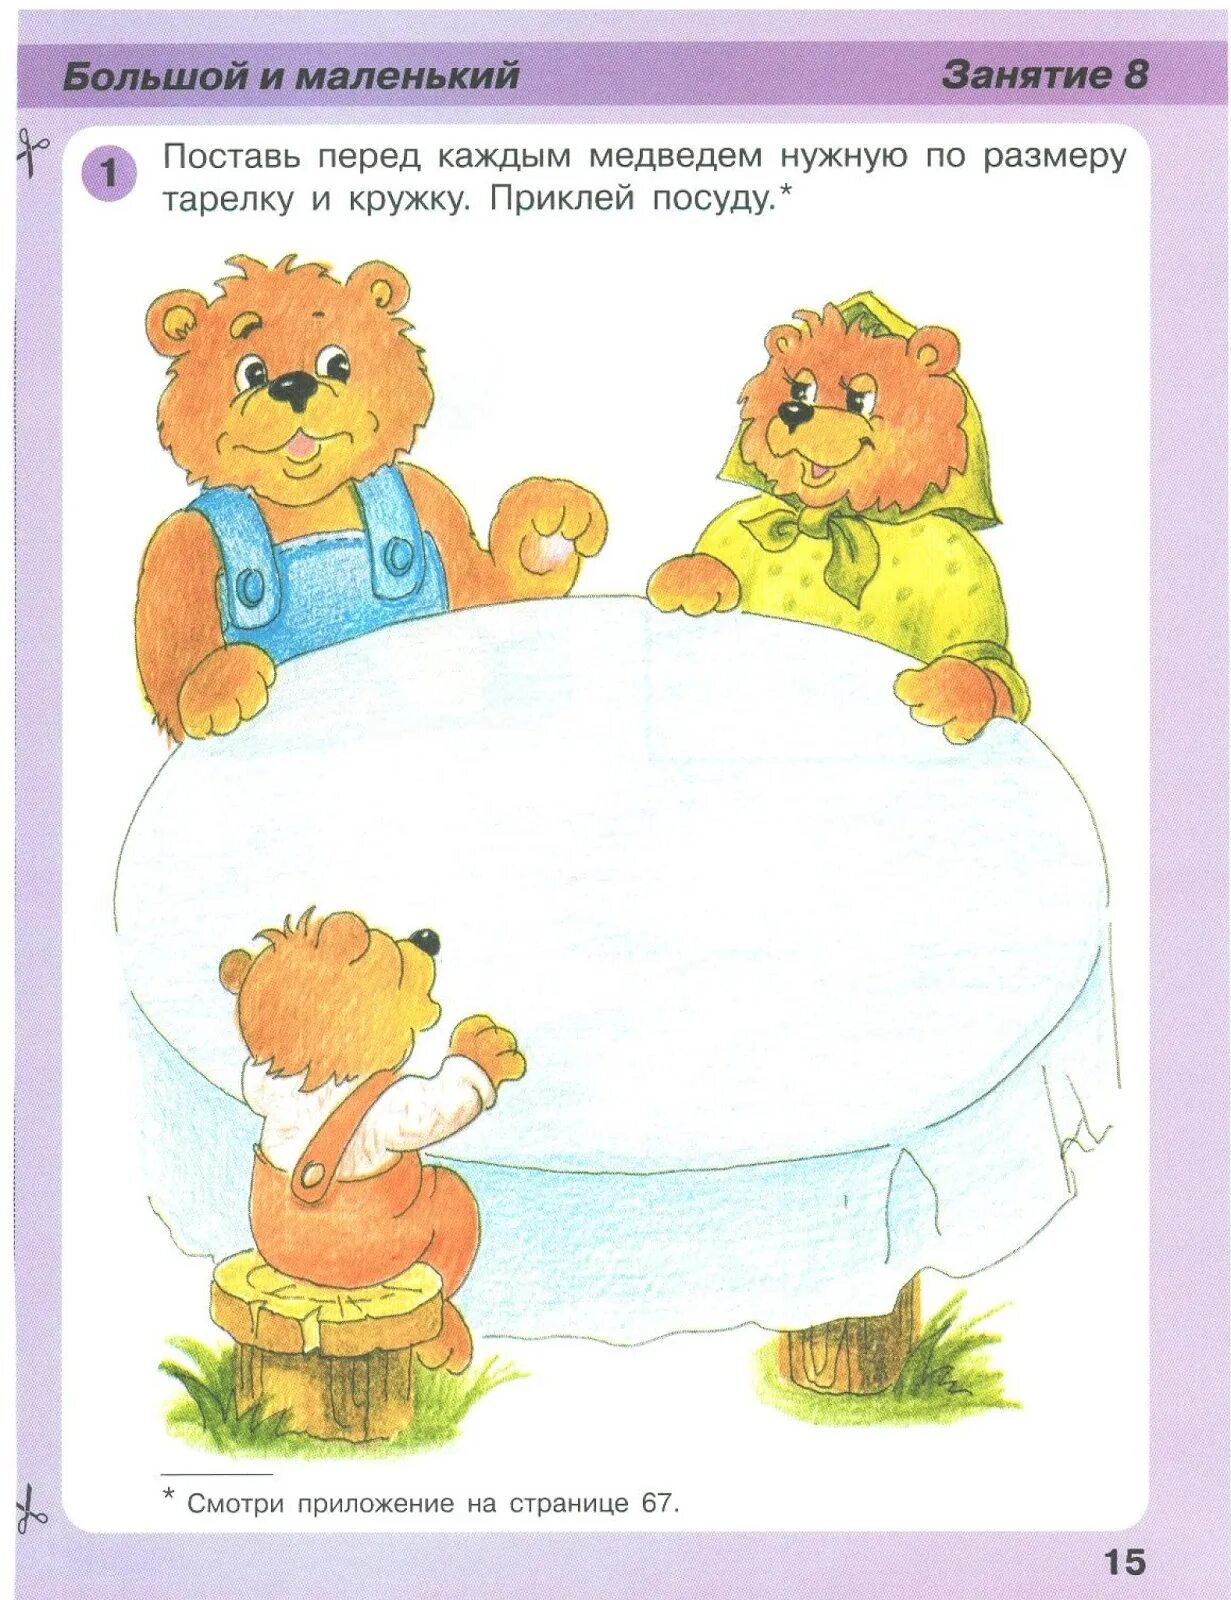 Три задания. Задания по сказке три медведя для дошкольников. Задания для малышей большой маленький. Занятие для малышей большой маленький. Большой и маленький для детей на занятие.